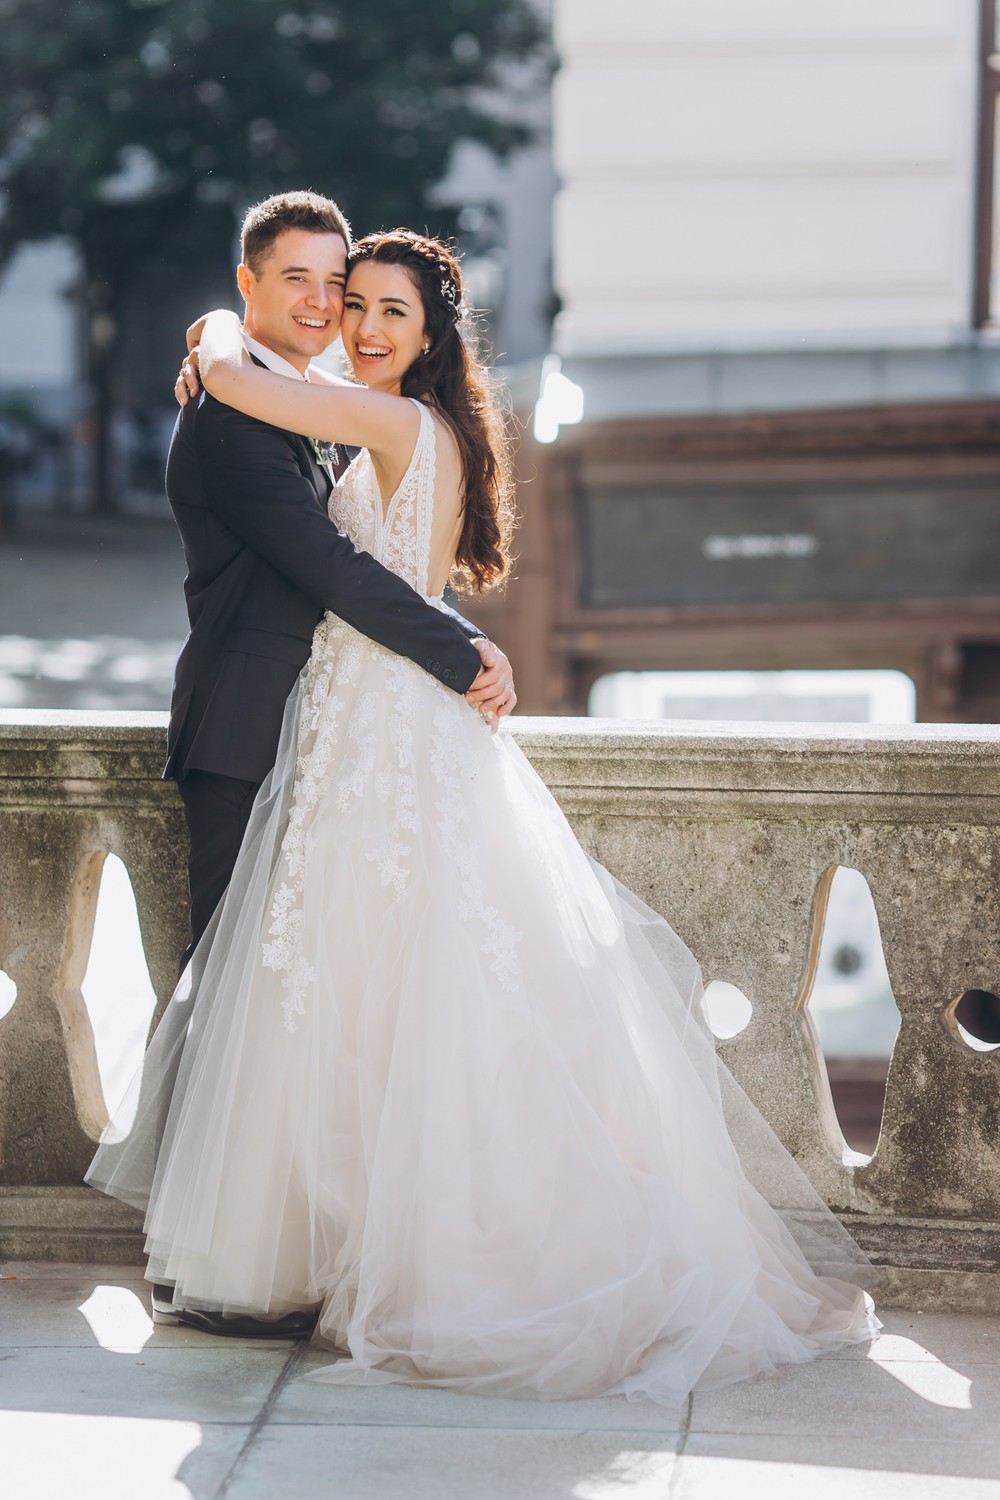 WEDDING IN VIENNA